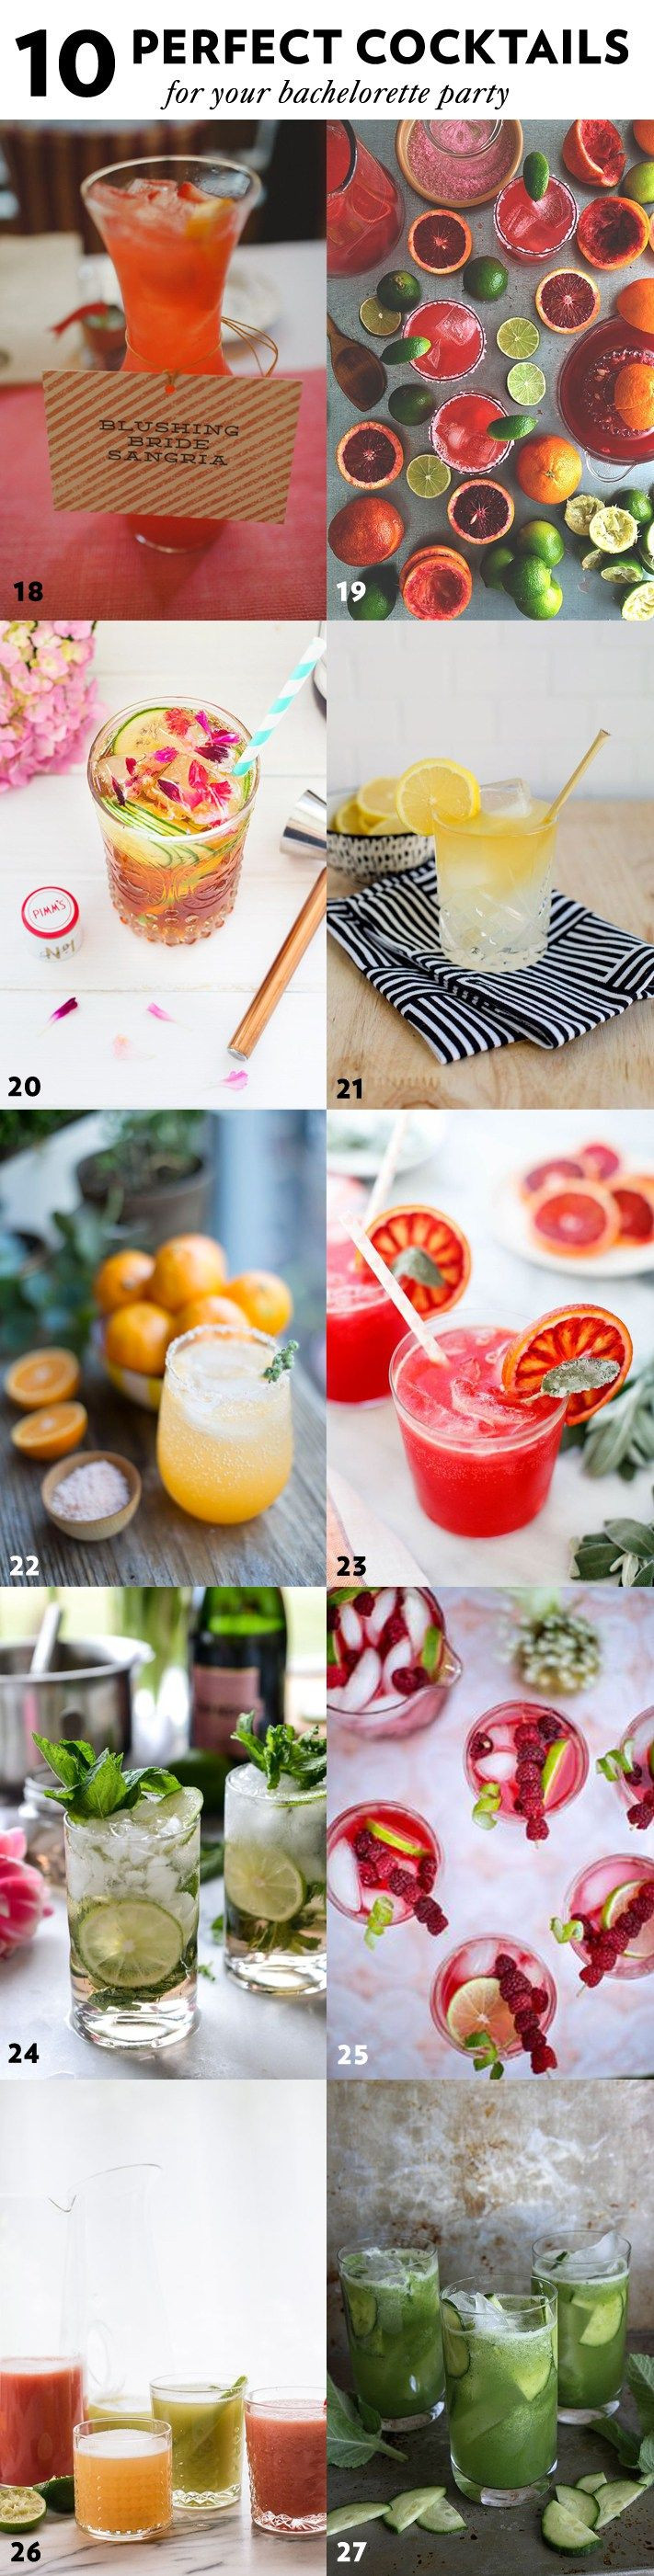 Bachelorette Party Drinks Ideas
 Best 25 Bachelorette party drinks ideas on Pinterest